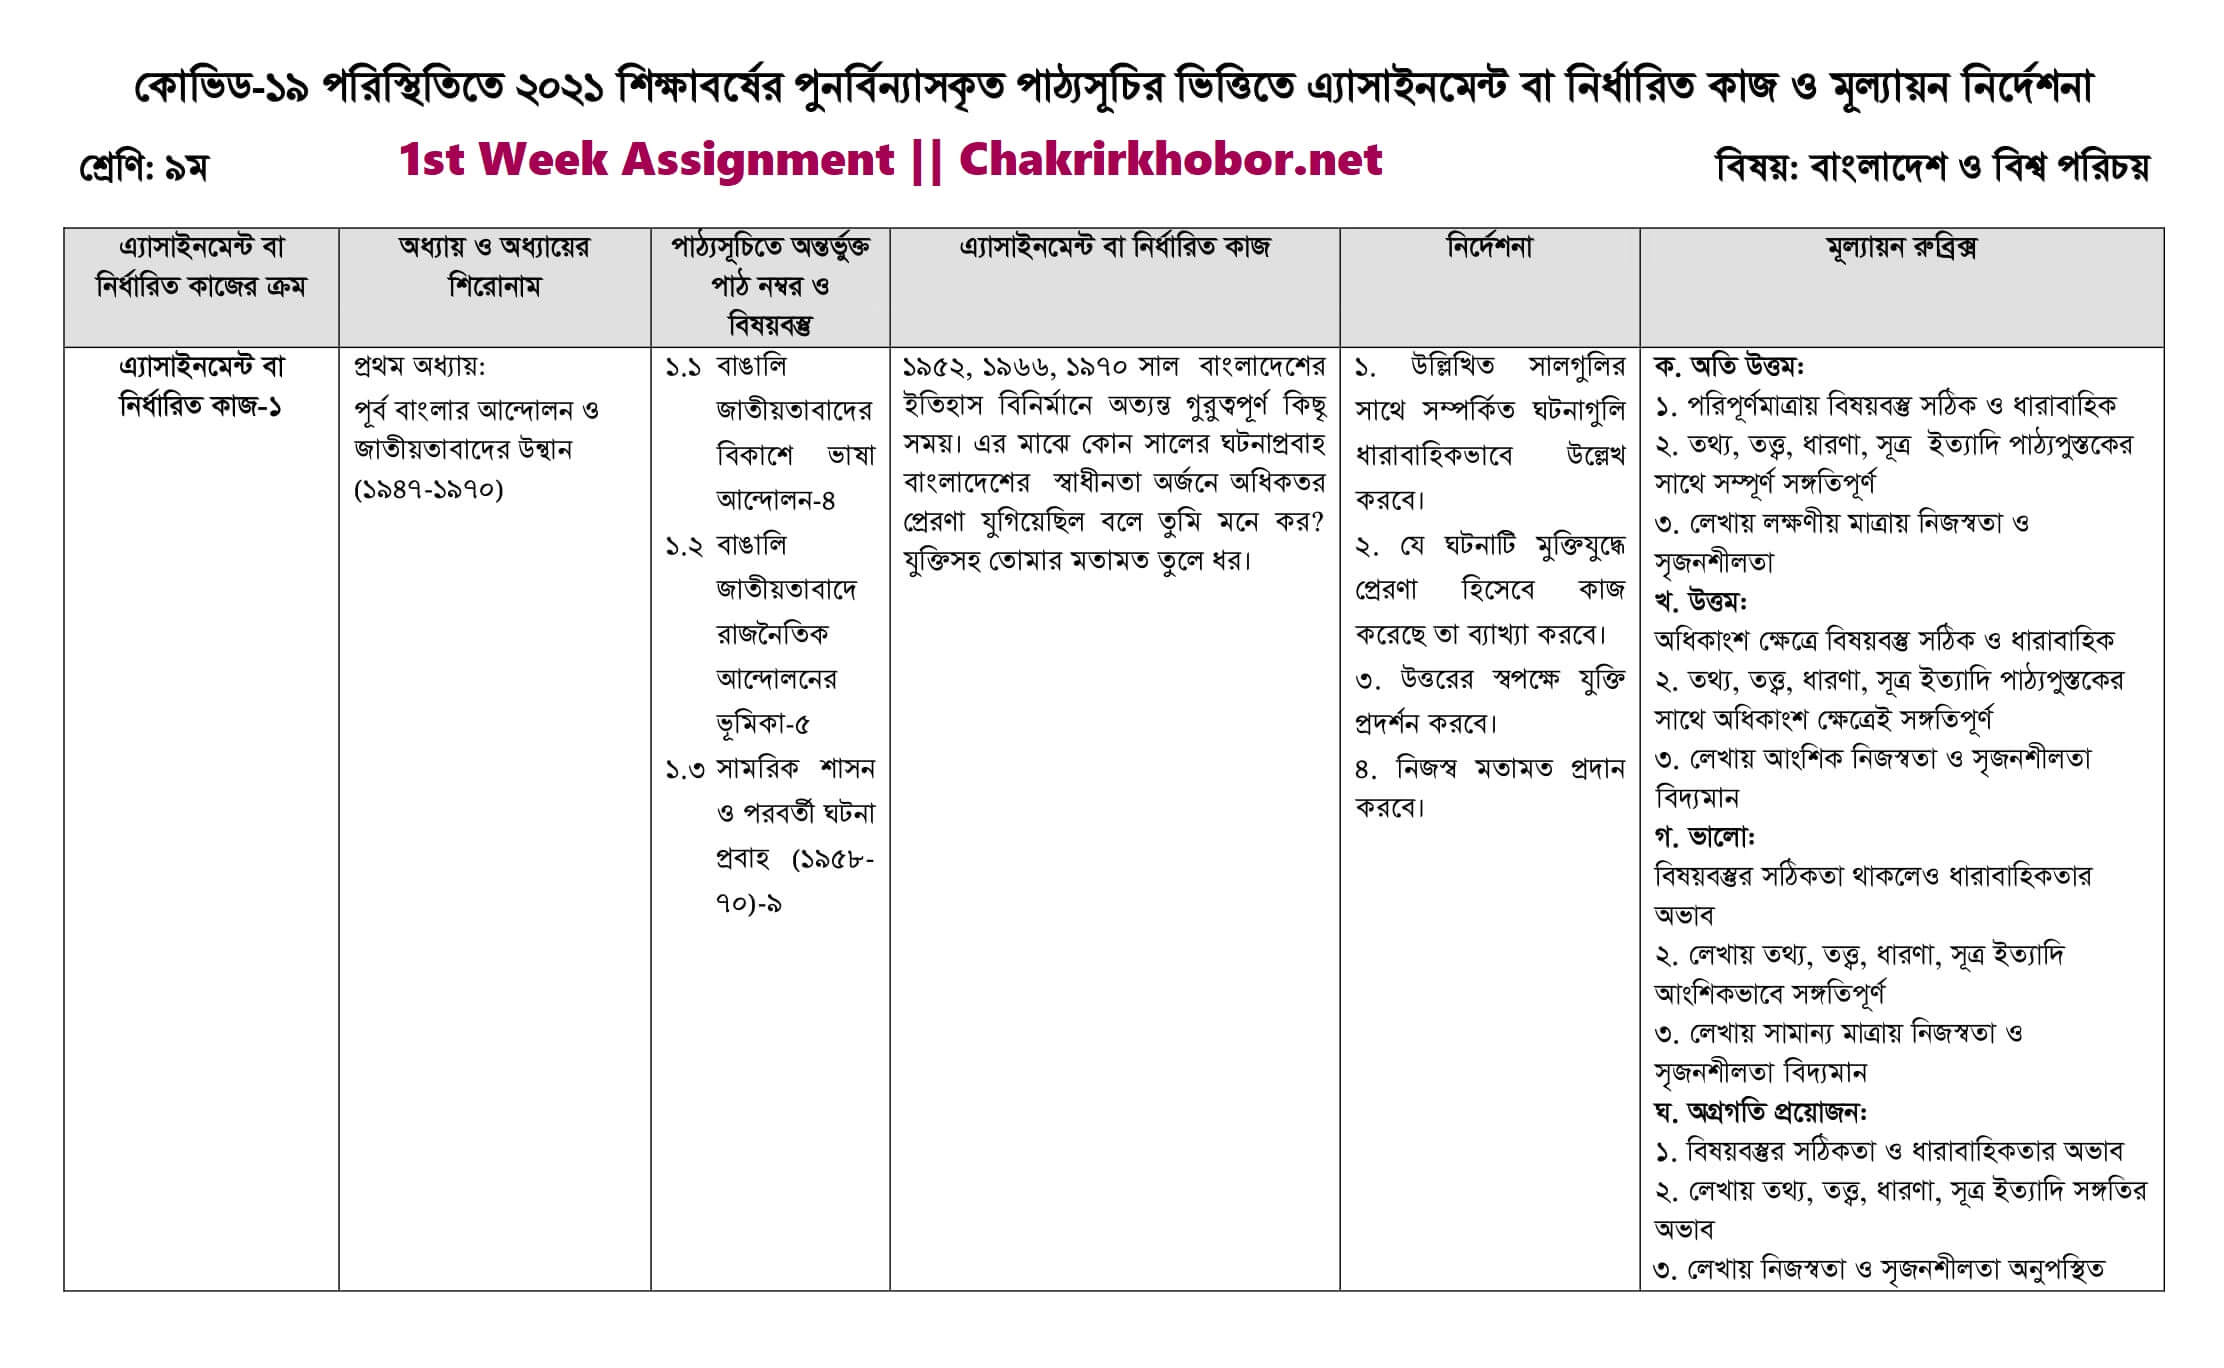 Class 9 Bangla Assignment